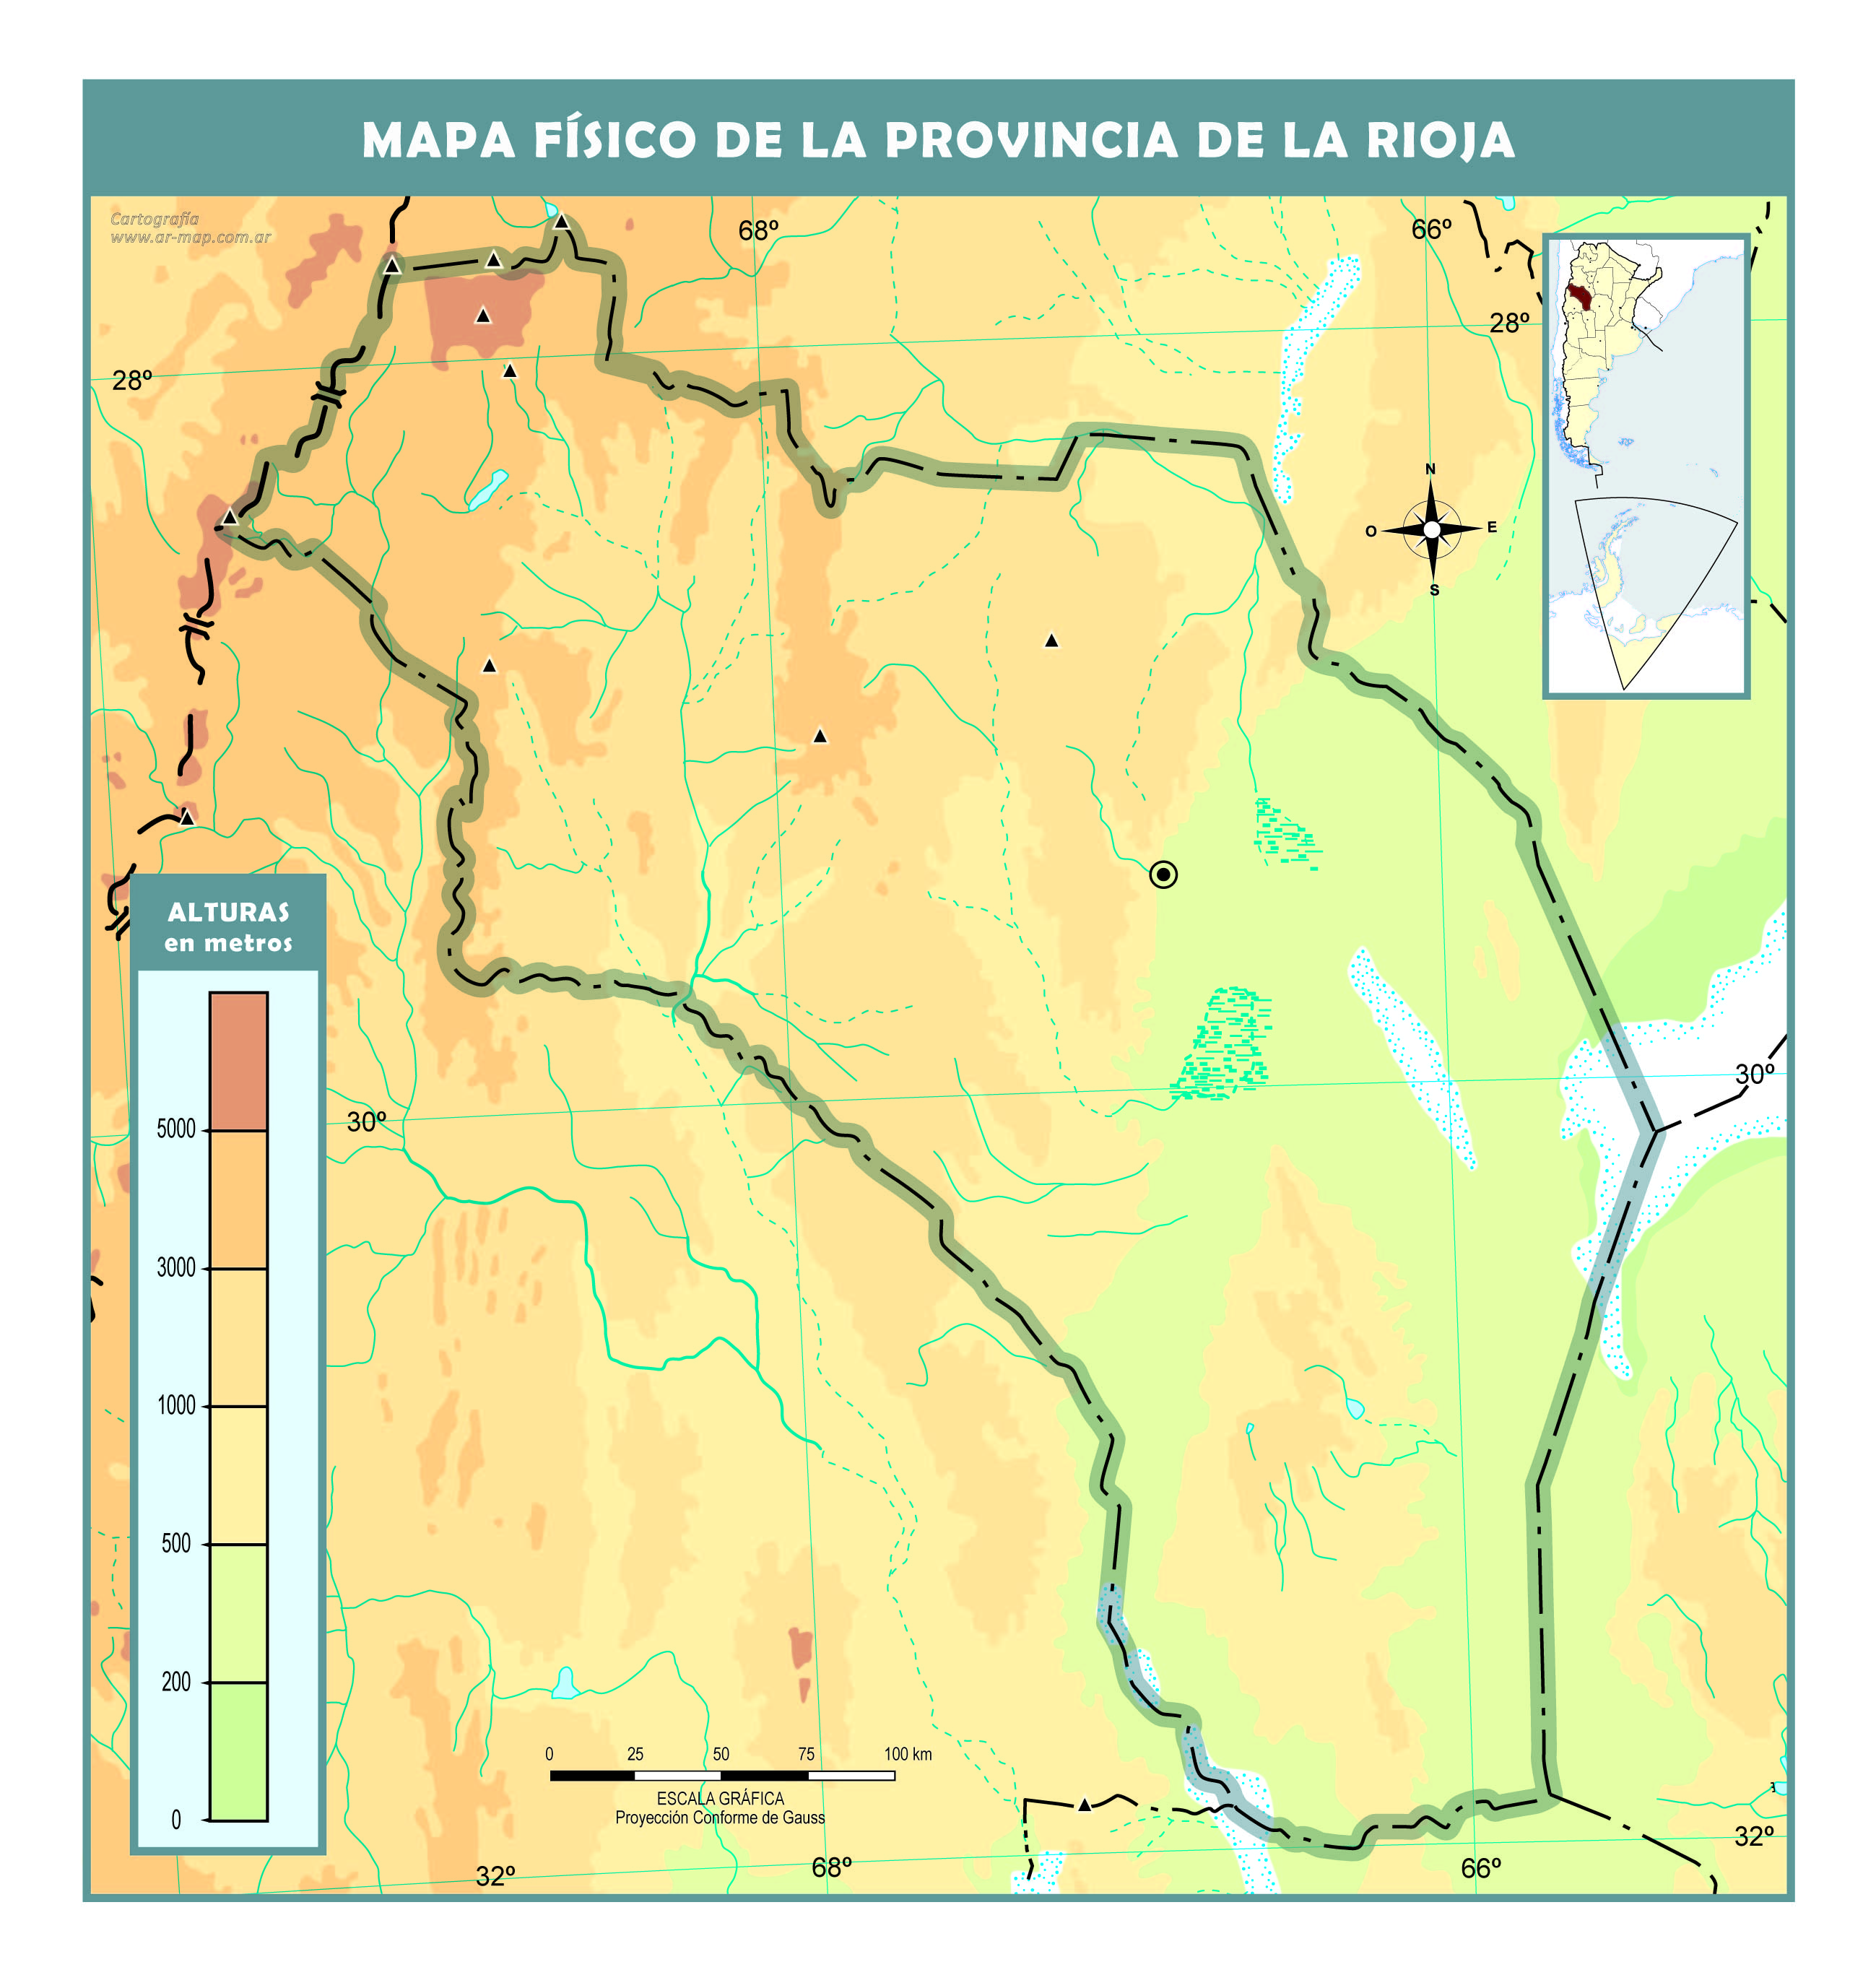 Mapa físico mudo de la provincia de La Rioja